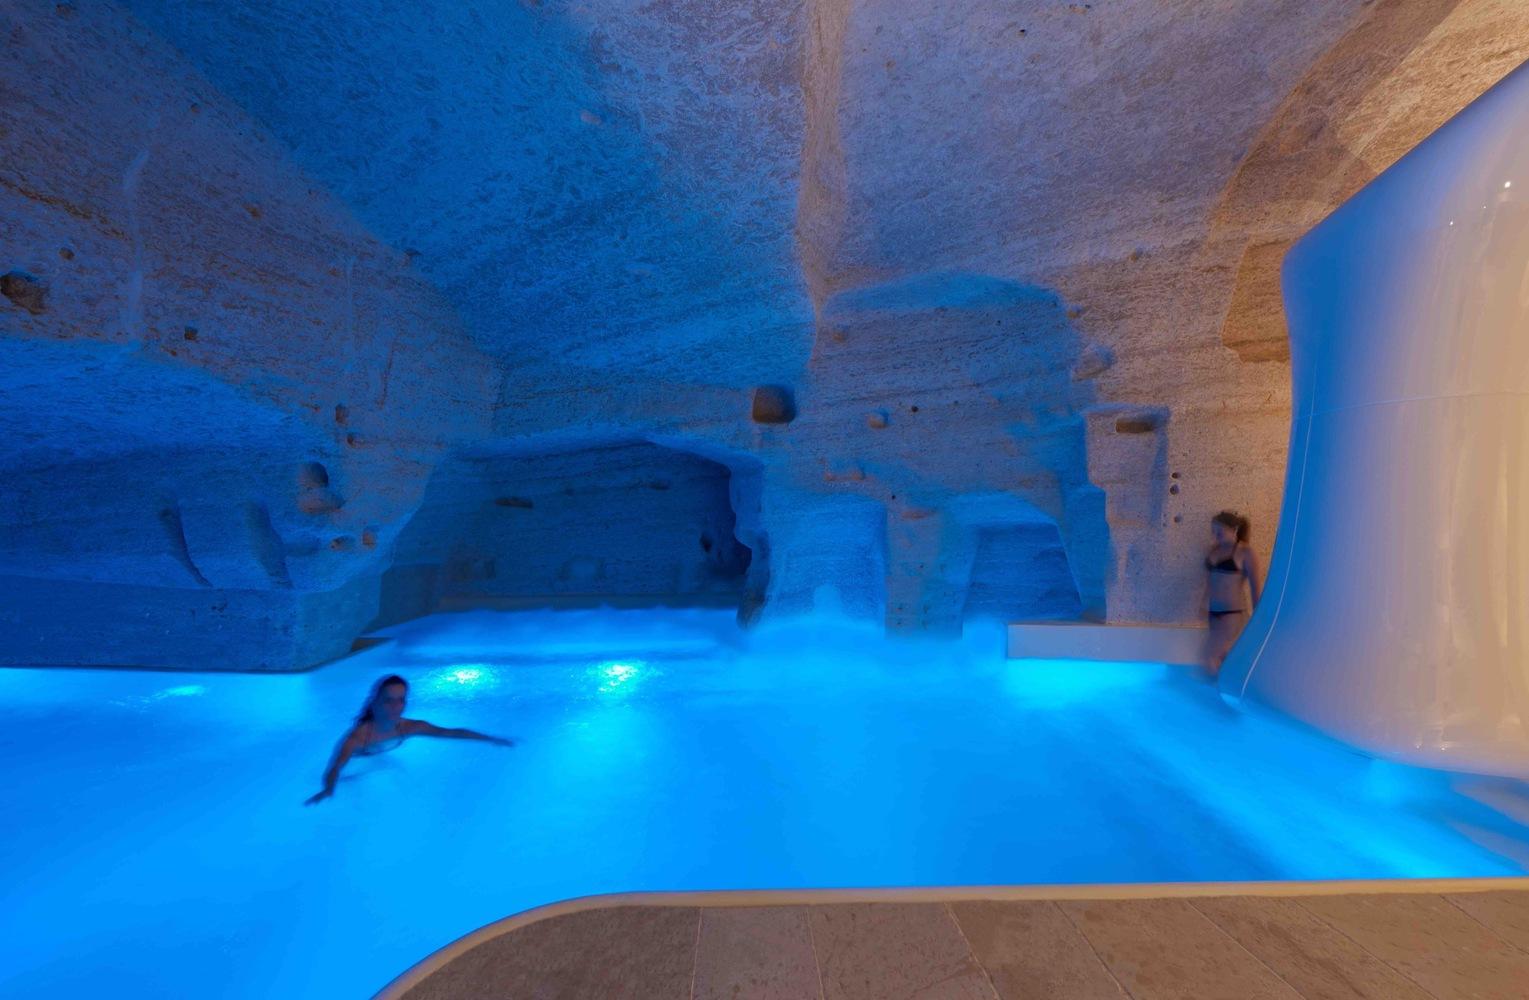 【純淨放鬆的度假體驗】懸崖洞穴水療酒店 俯瞰意大利古城的壯麗景色